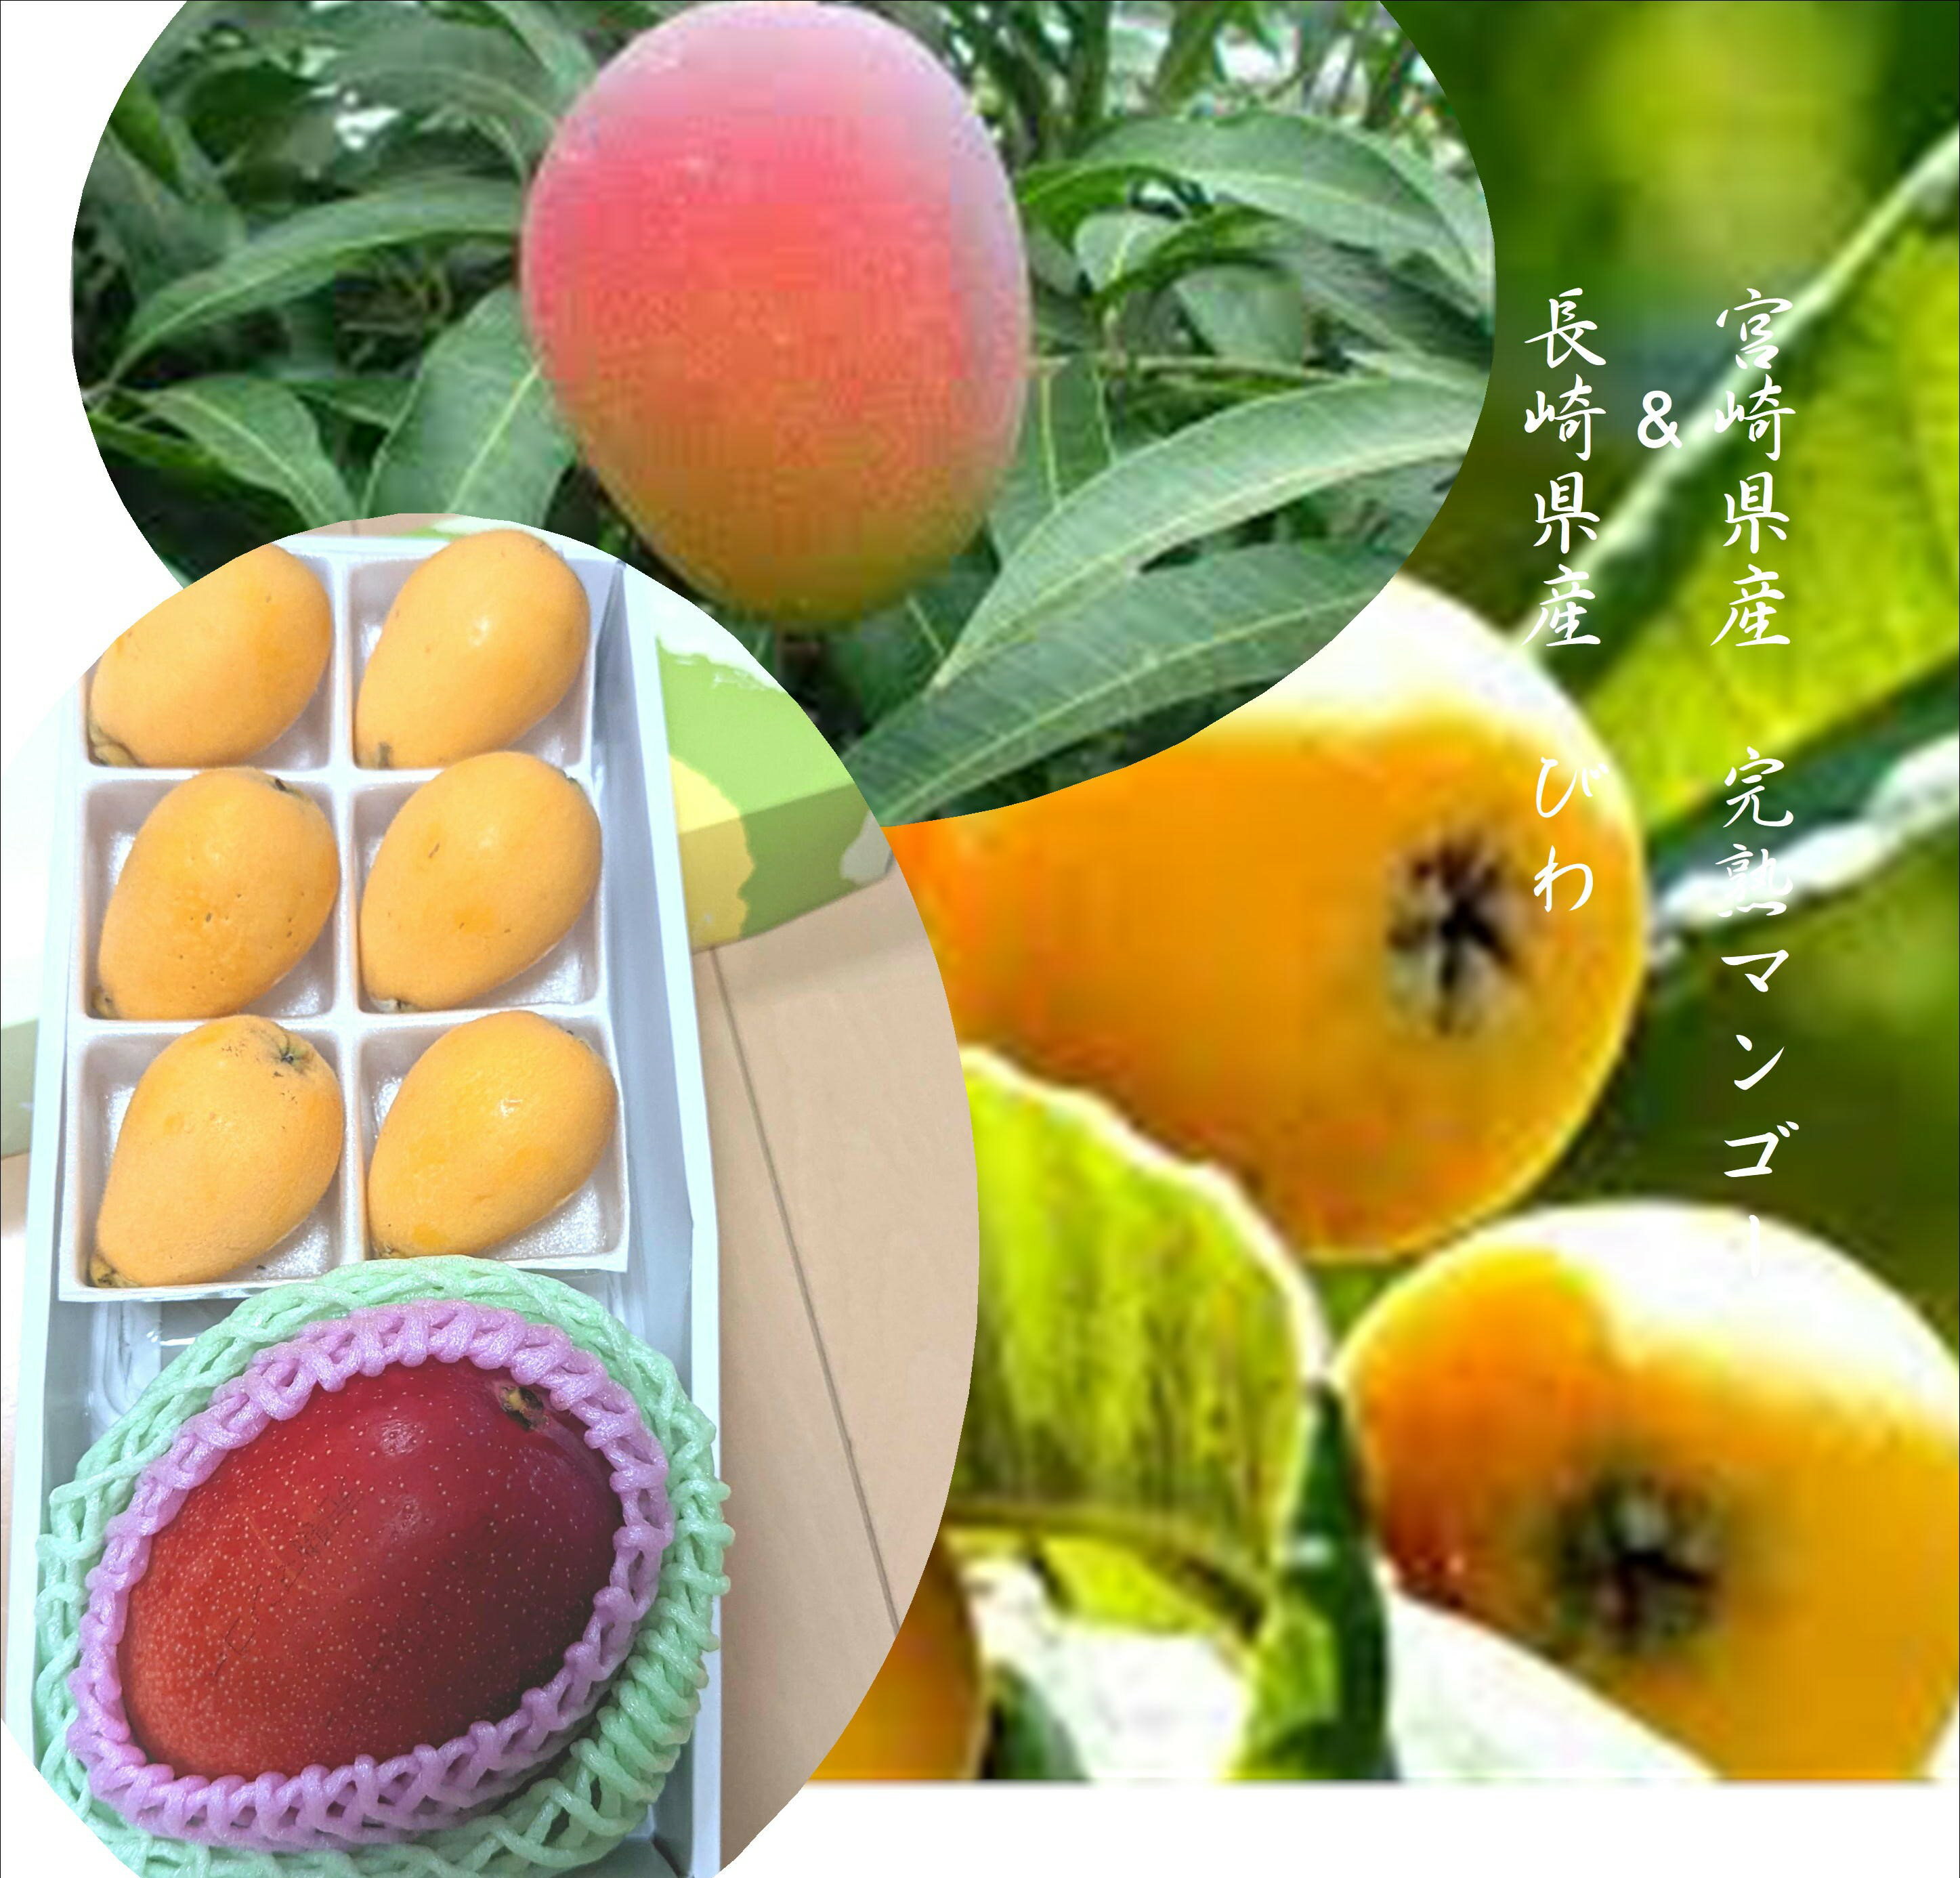 長崎県産　ハウス栽培びわ&宮崎県産完熟マンゴー(びわL寸6玉　マンゴー2L寸1玉進物用）　※びわは出荷時期により品種が変わります。箱のデザインが変わる場合が御座います。